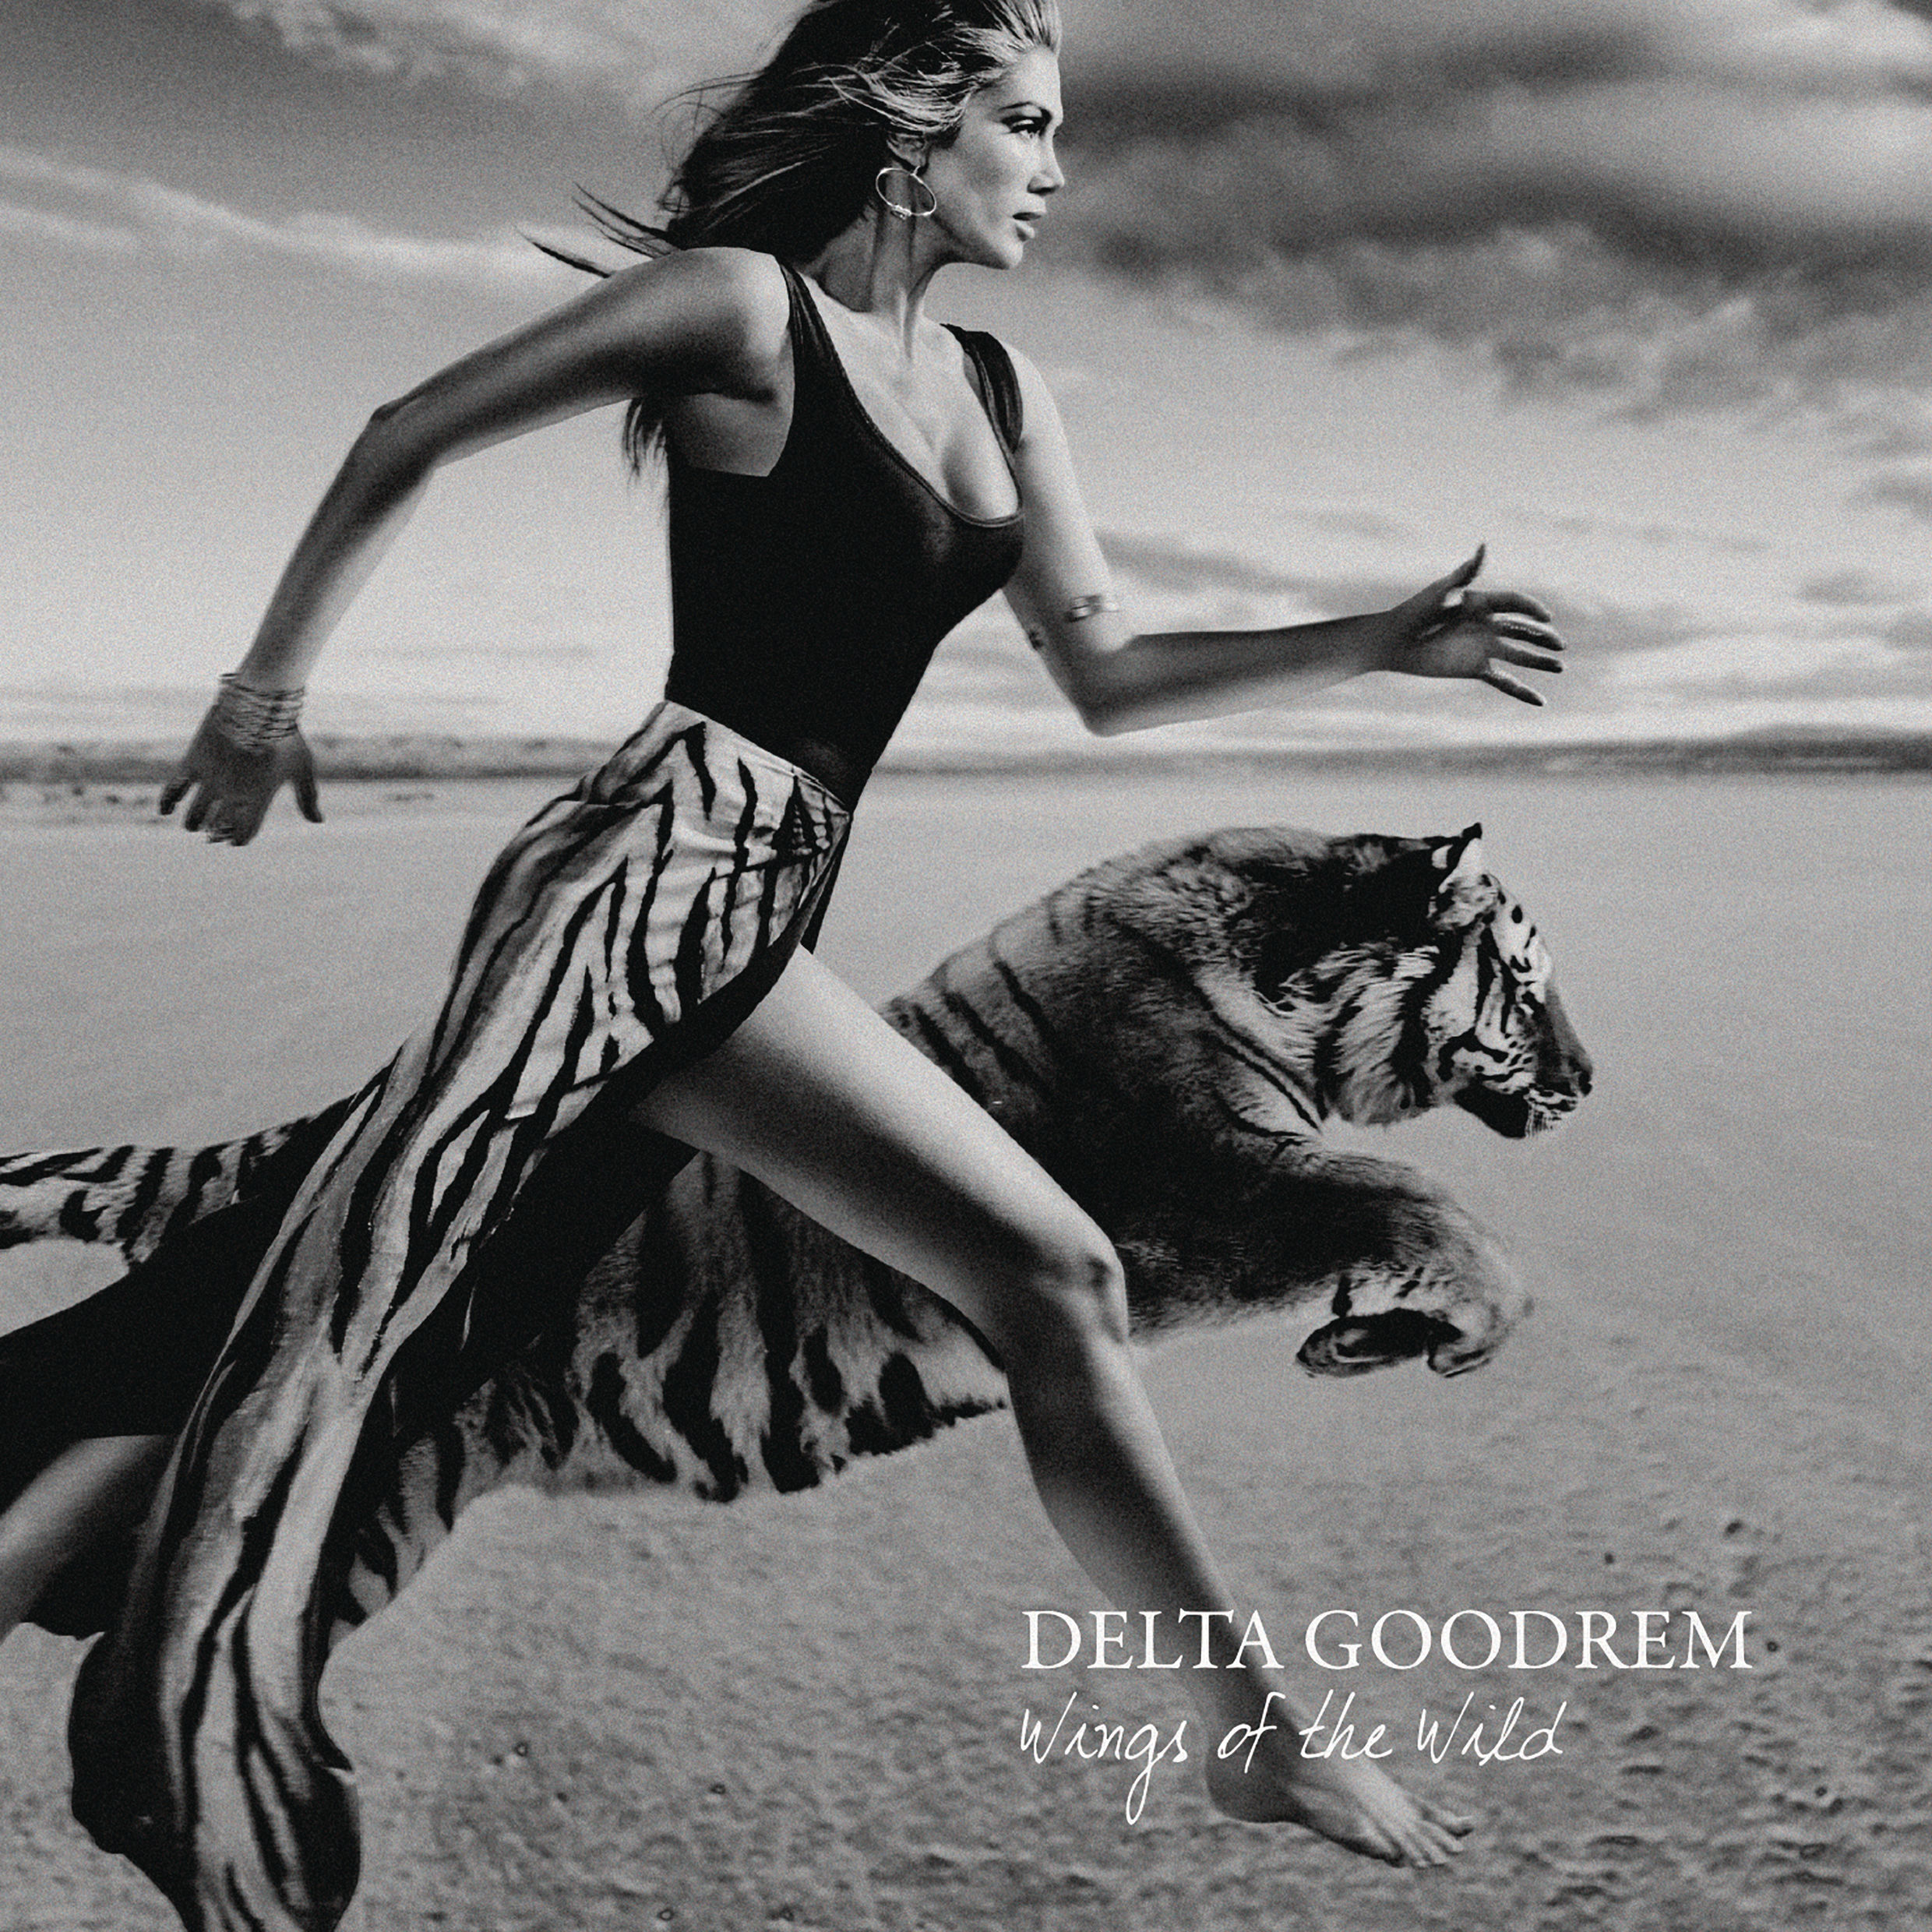 Delta Goodrem - Wings of the Wild (album artwork cover)